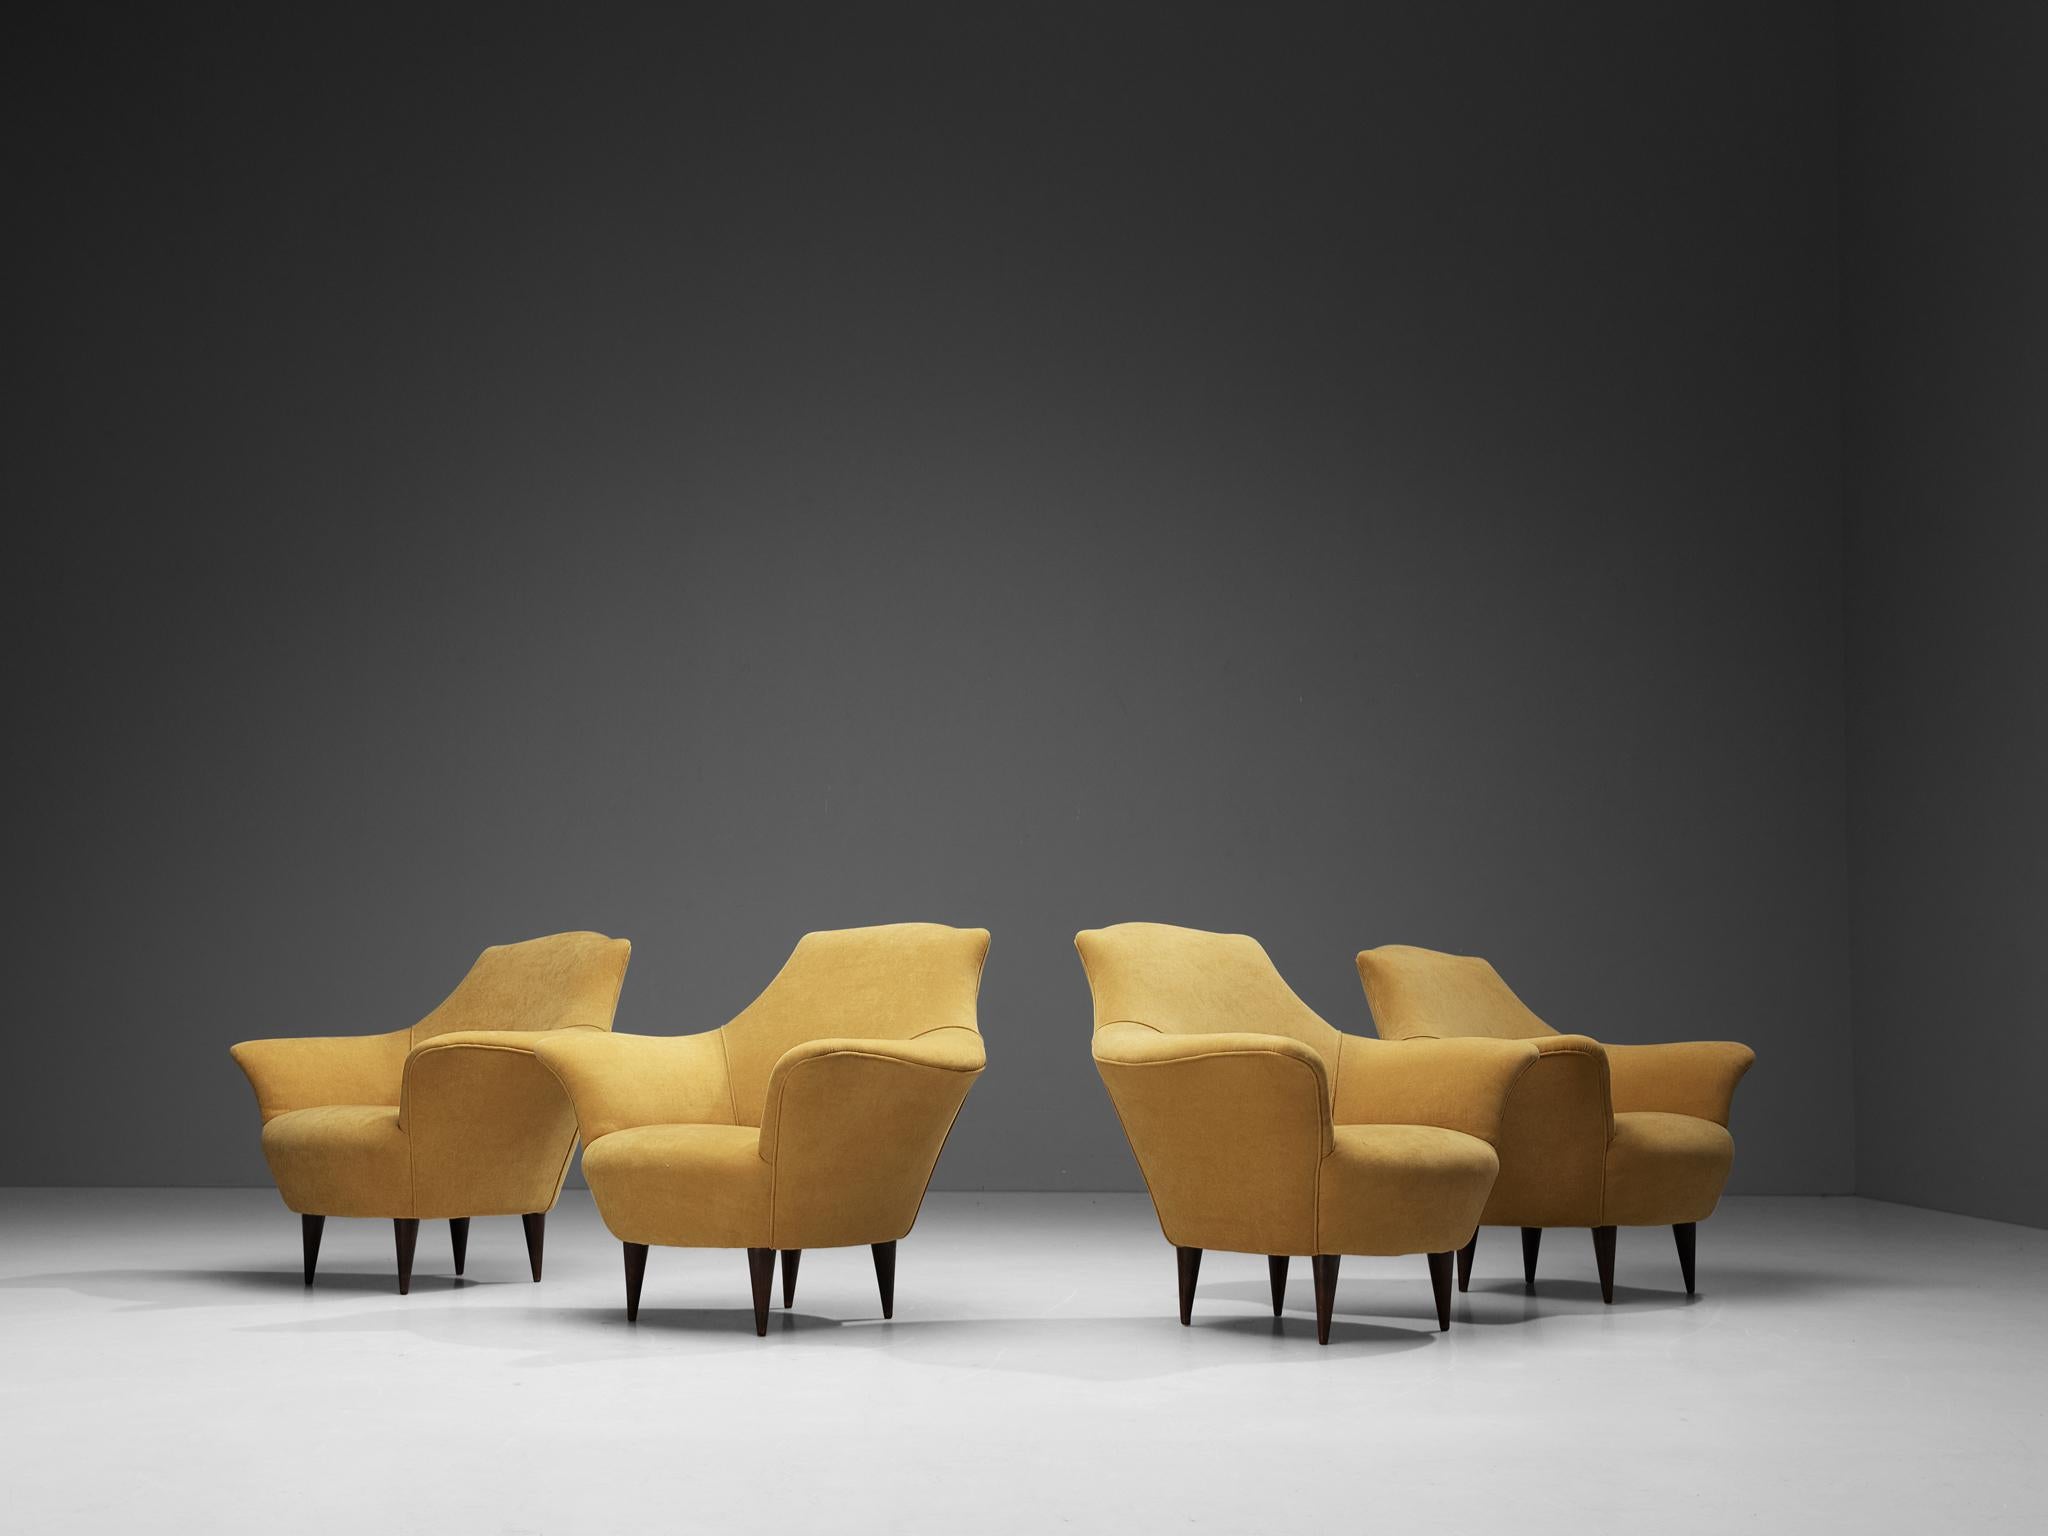 Satz von vier Clubsesseln, Samt, gebeizte Esche, Italien, 1950er Jahre

Dieses schöne Set italienischer Loungesessel zeichnet sich durch eine raffinierte Ästhetik aus, die durch die geschwungenen Linien und die runden Kanten entsteht. Die Sitzfläche